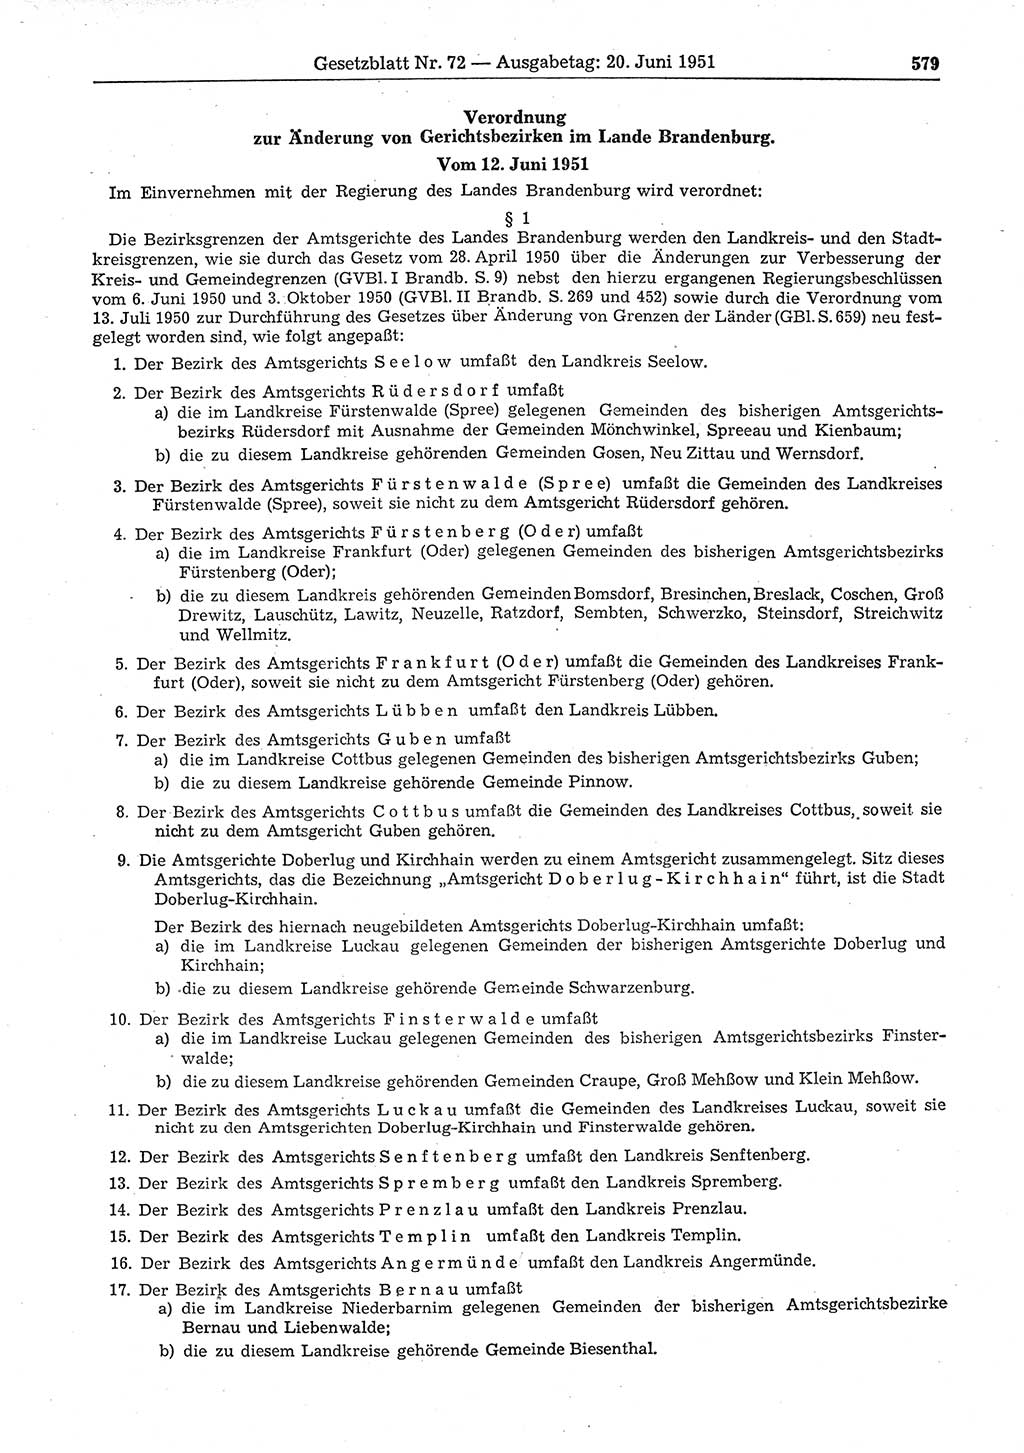 Gesetzblatt (GBl.) der Deutschen Demokratischen Republik (DDR) 1951, Seite 579 (GBl. DDR 1951, S. 579)